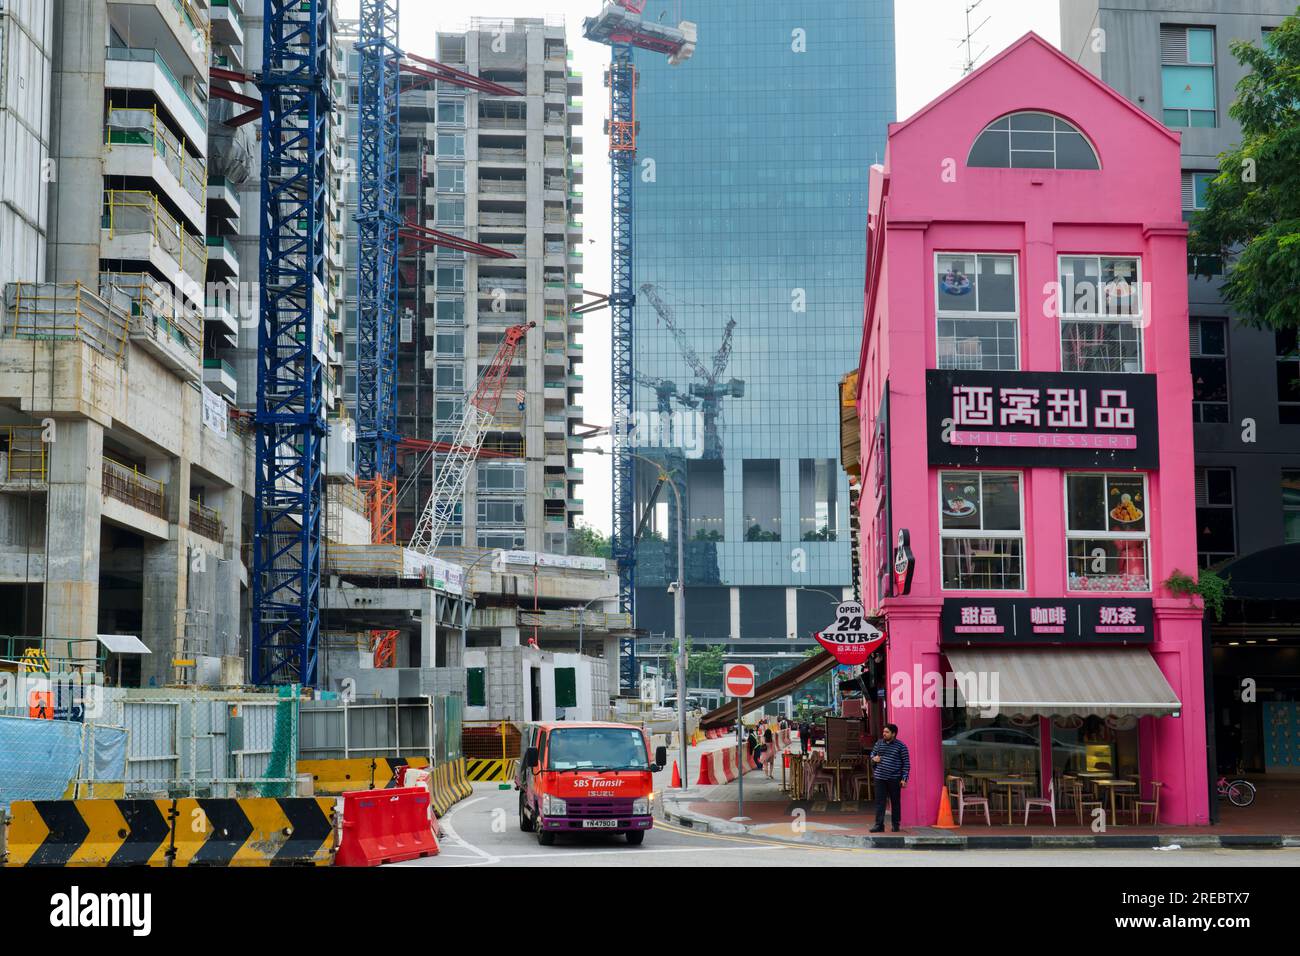 Construction de grande hauteur en cours dans le quartier de Bugis, Singapour, un vieux bâtiment rose abritant un magasin Smile dessert offrant un contraste frappant dans le style Banque D'Images